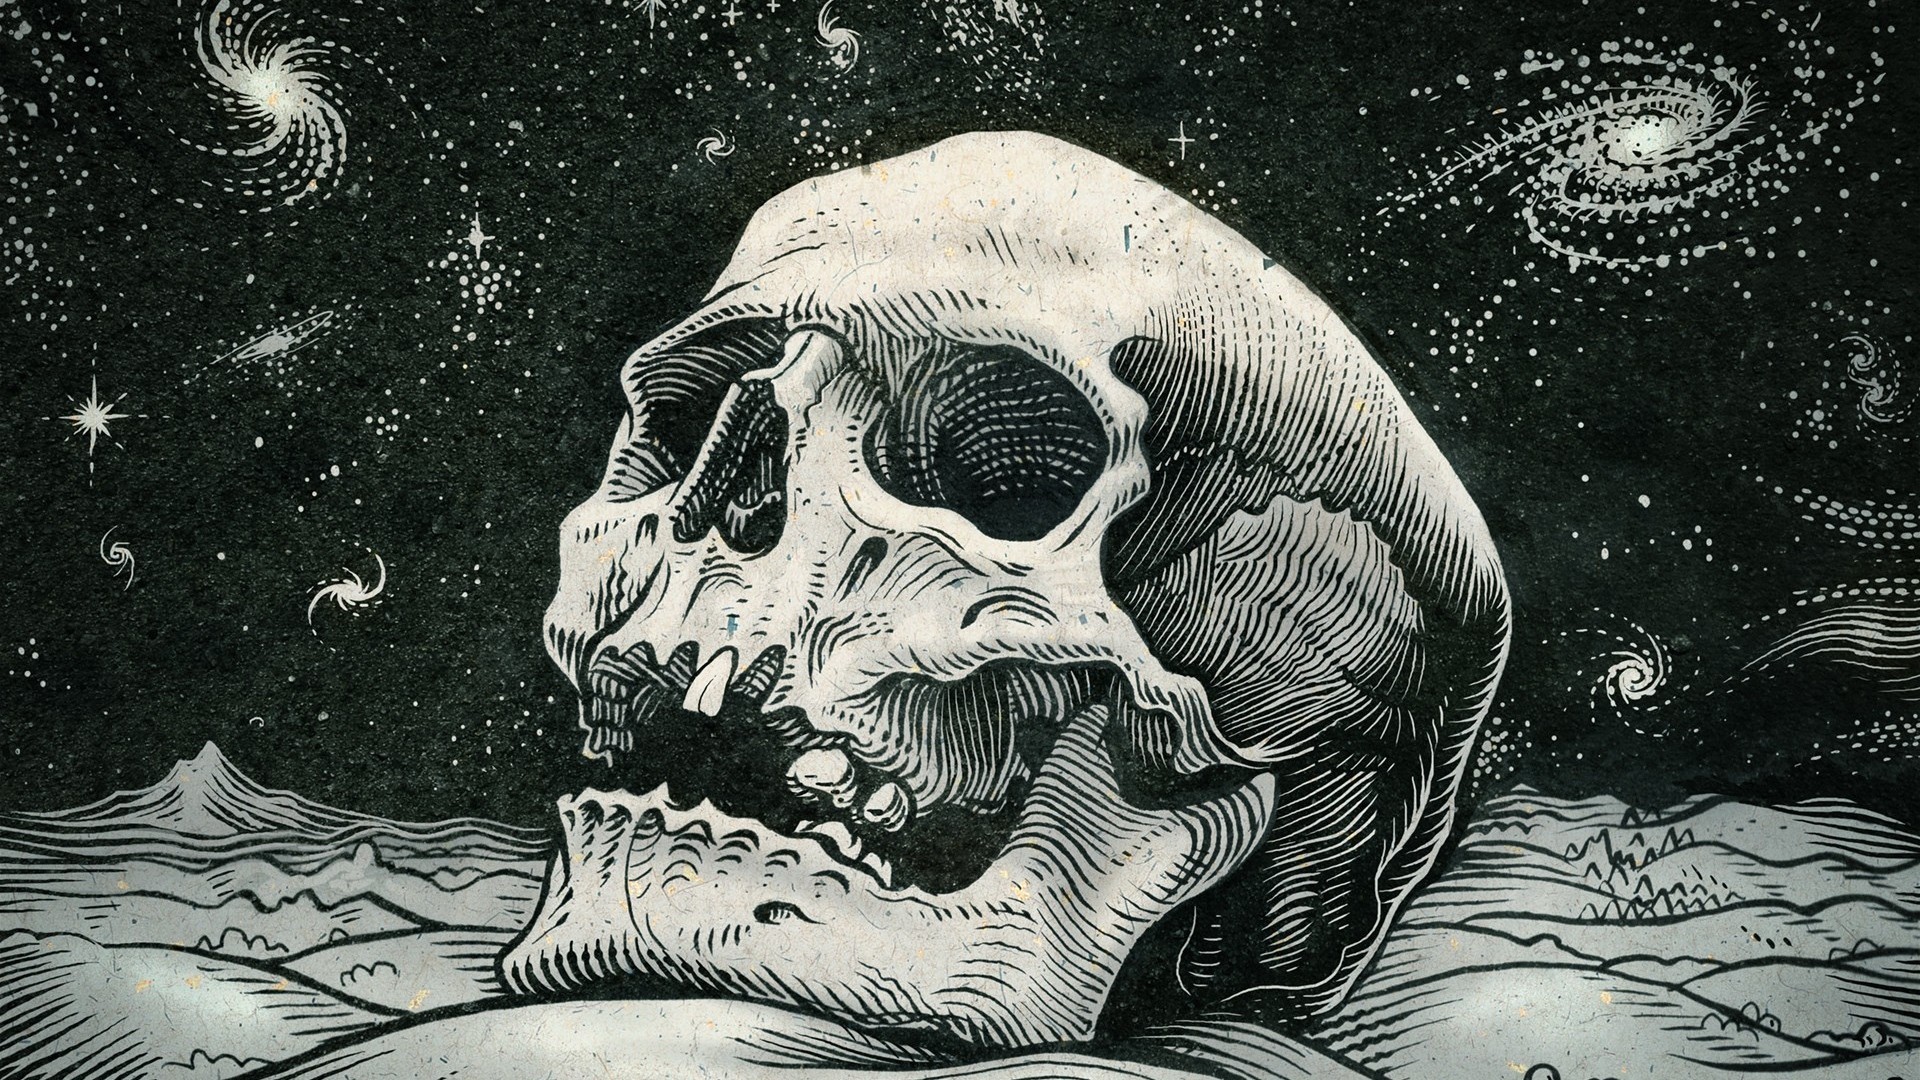 1920x1080  Cool Wallpaper of Skull | HD Wallpapers | Pinterest | Skull  wallpaper, Hd skull